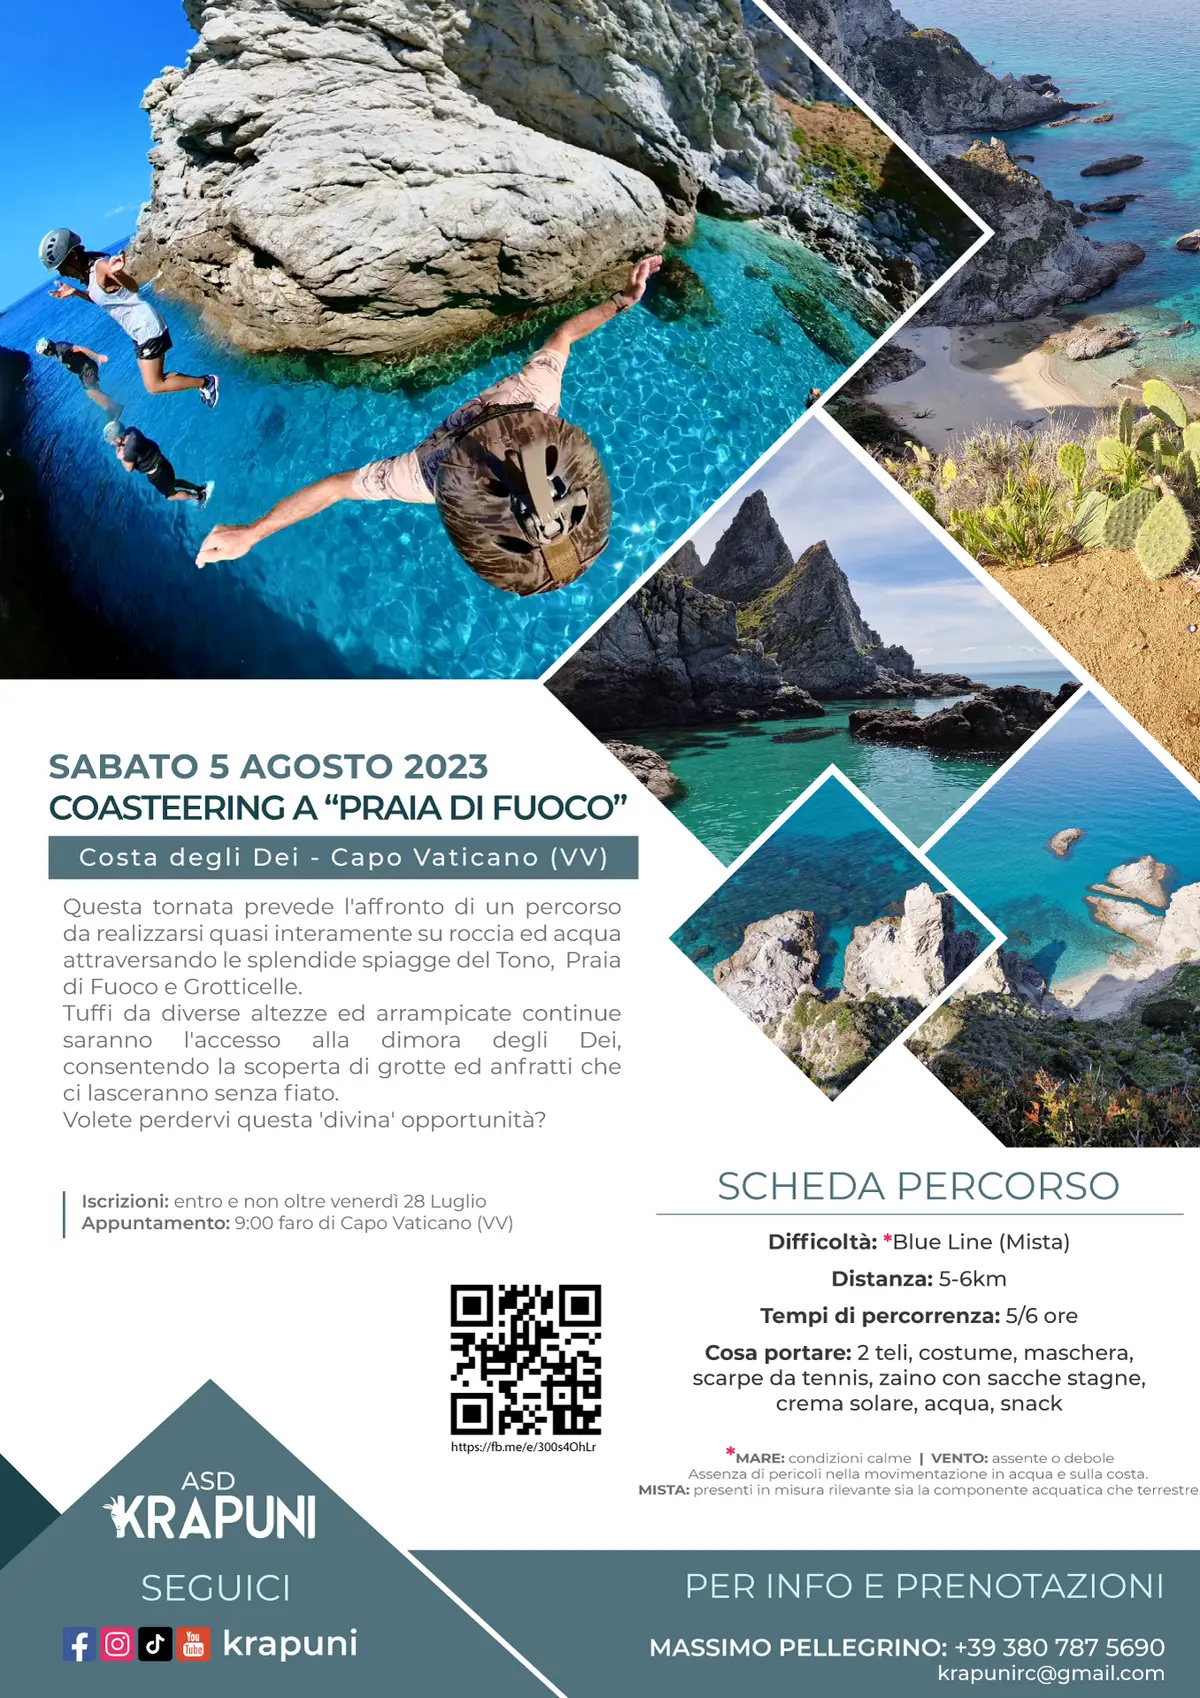 Krapuni_Coasteering_Praia-di-Fuoco_05-08-23